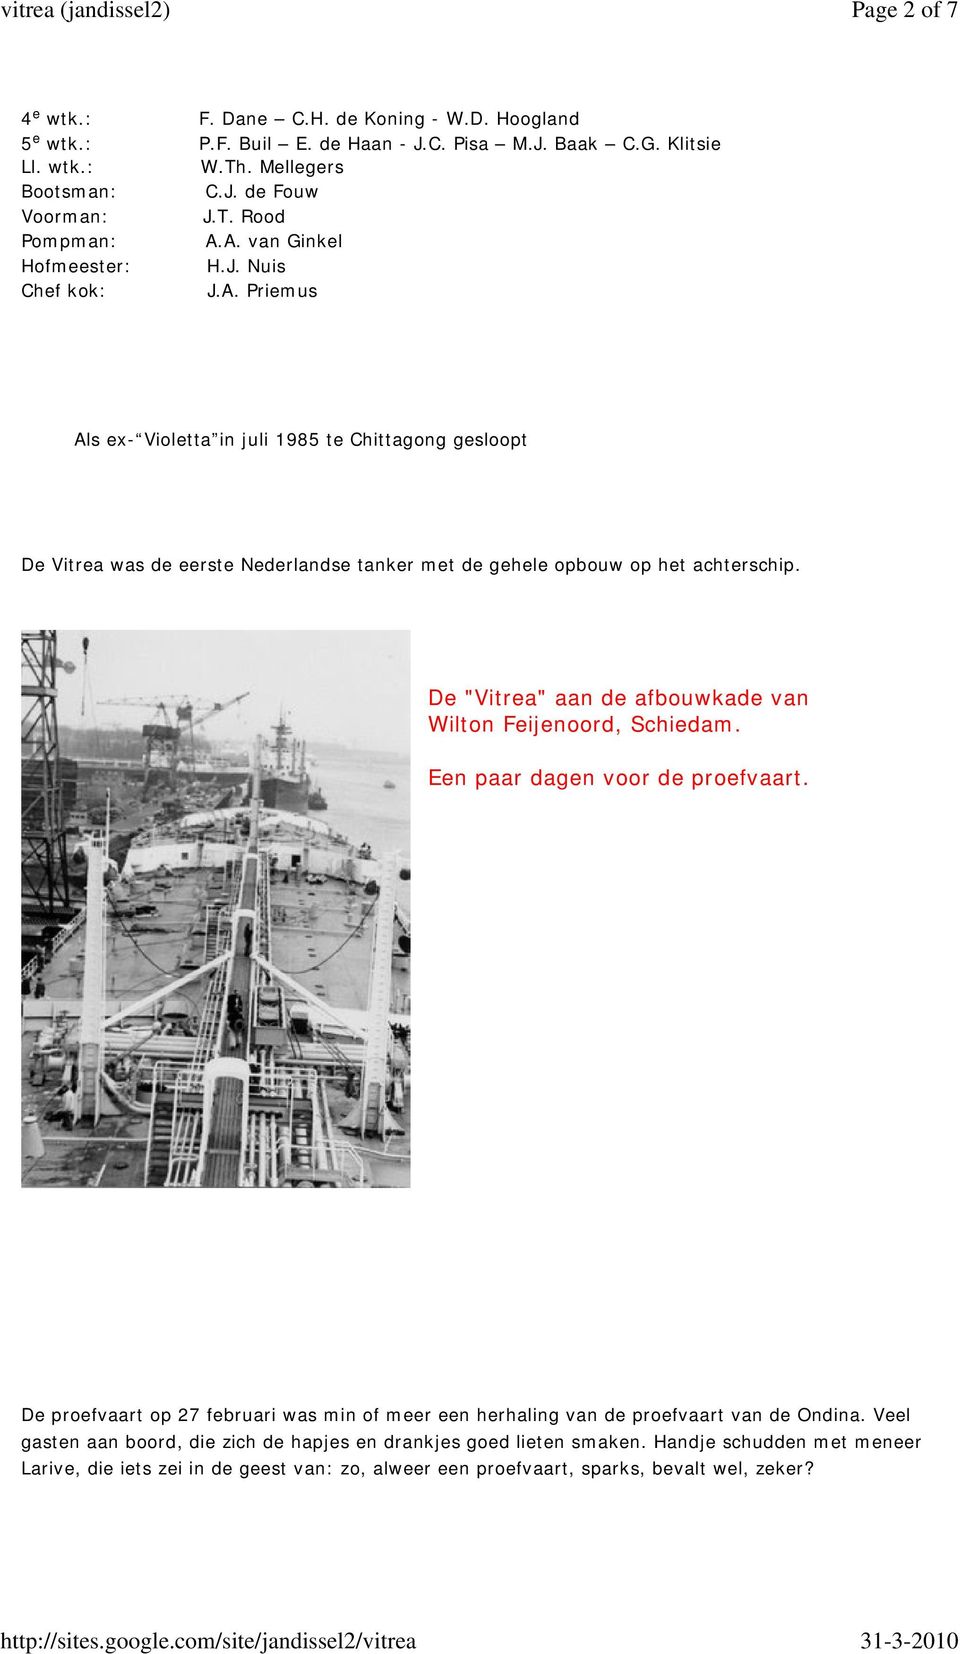 De "Vitrea" aan de afbouwkade van Wilton Feijenoord, Schiedam. Een paar dagen voor de proefvaart. De proefvaart op 27 februari was min of meer een herhaling van de proefvaart van de Ondina.